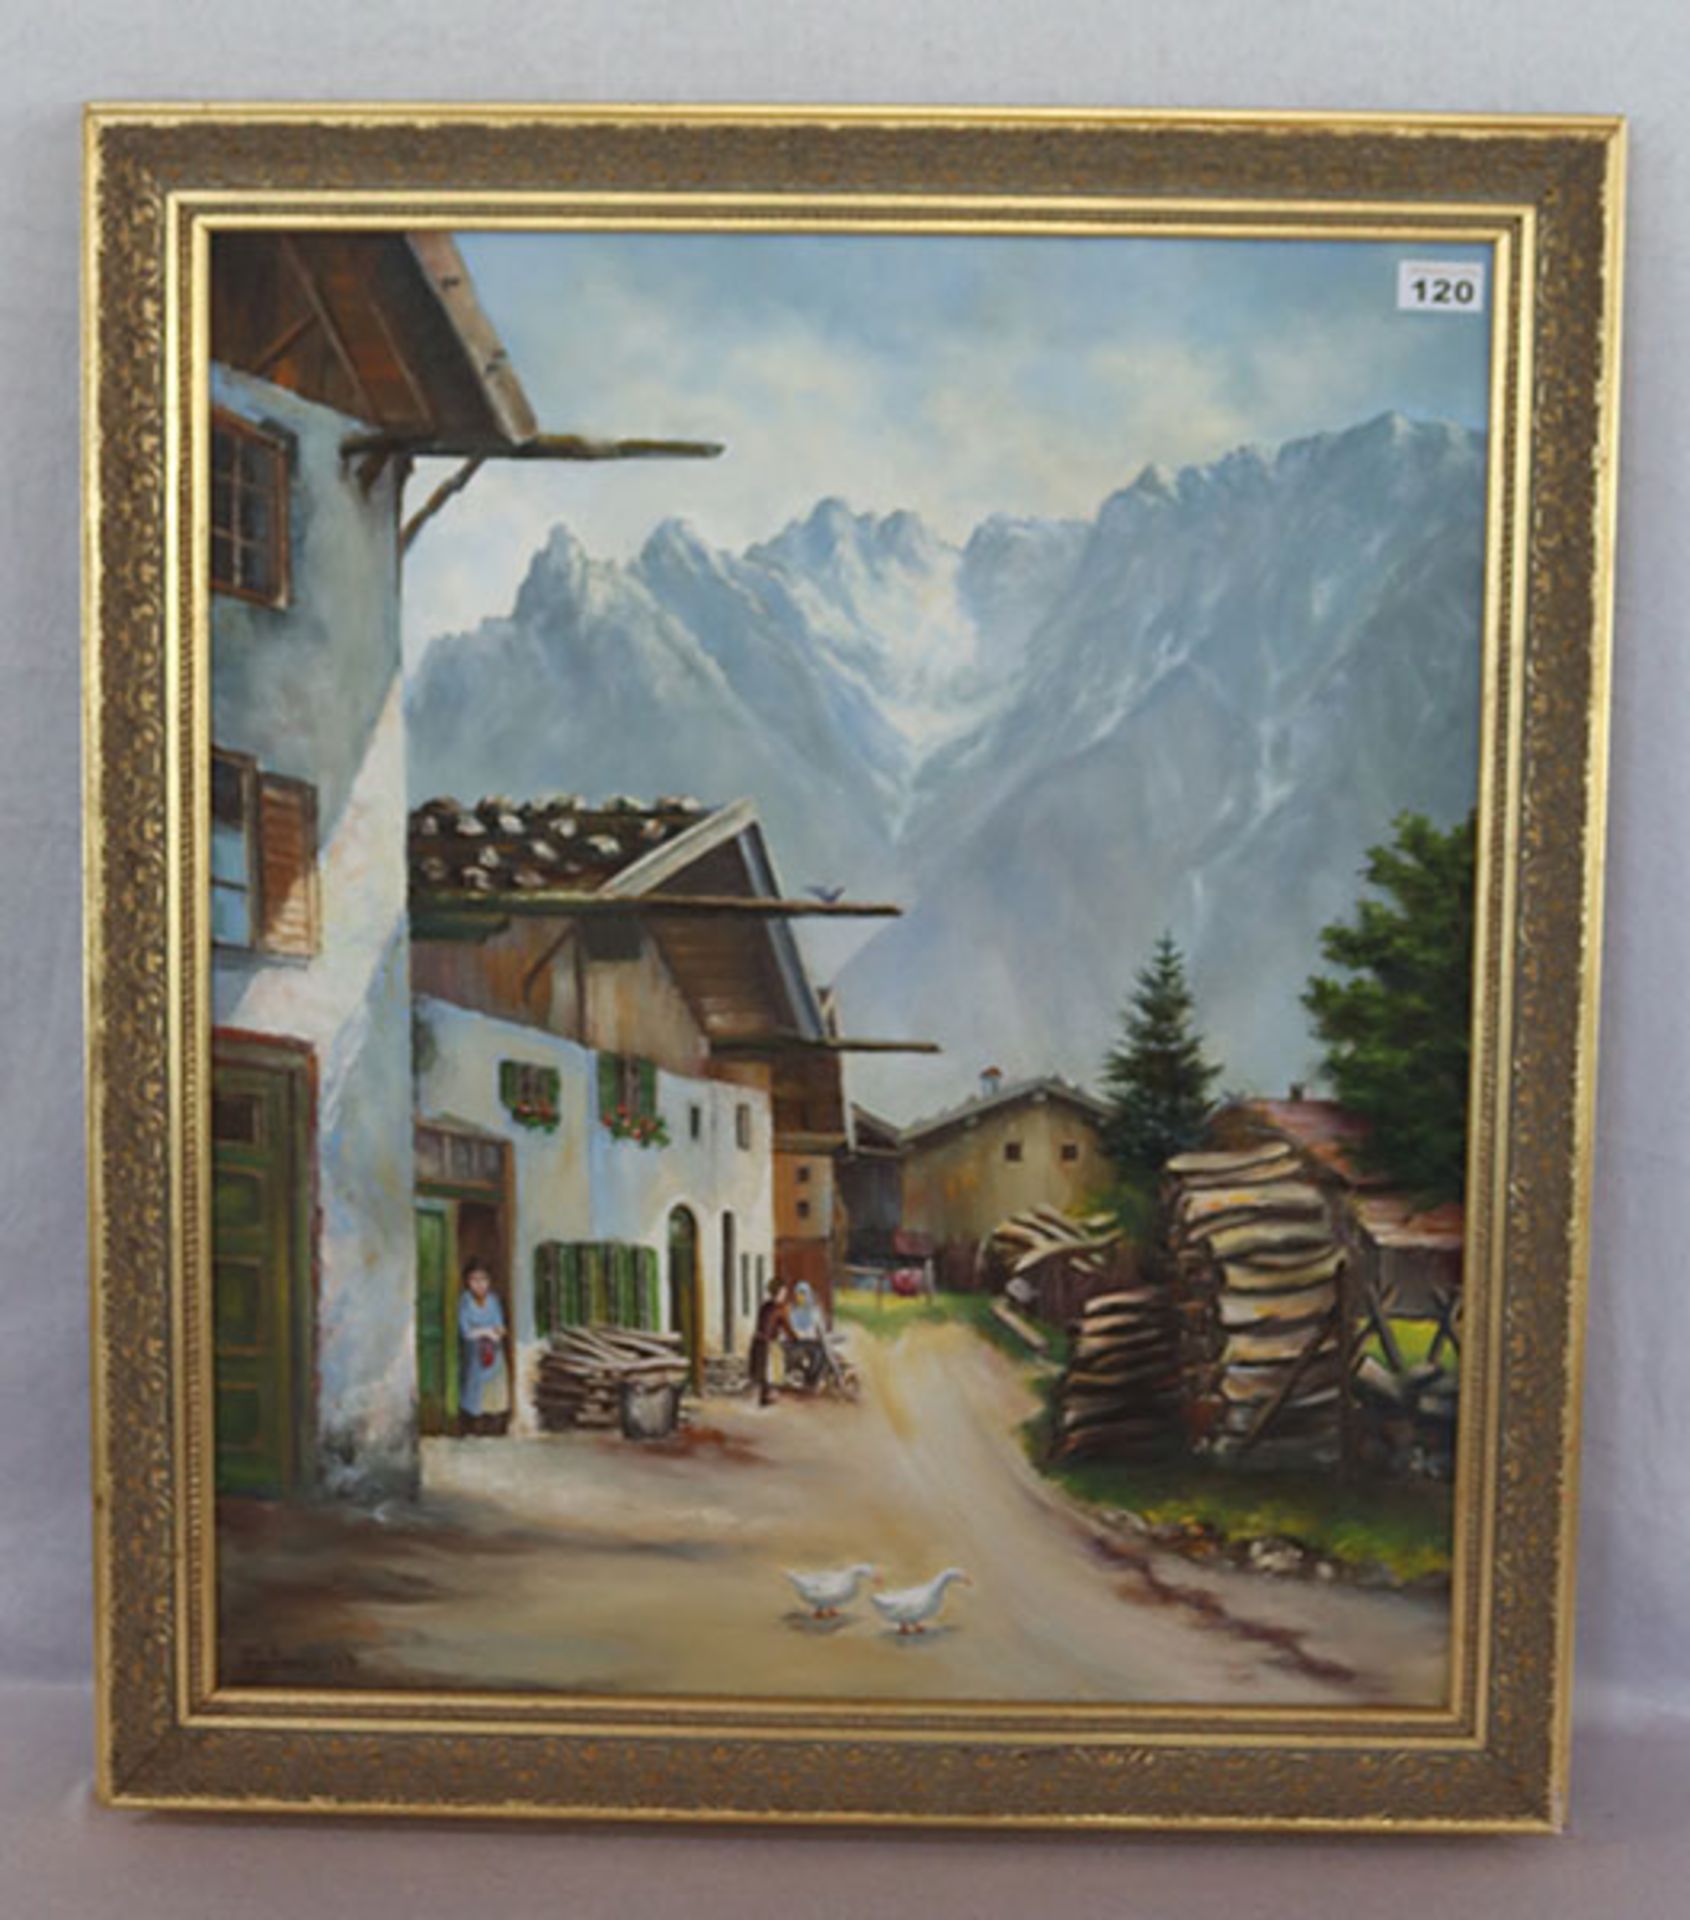 Gemälde ÖL/LW 'Mittenwald mit Karwendel', signiert Kreitmaier 1974, gerahmt, Rahmen bestossen, incl.